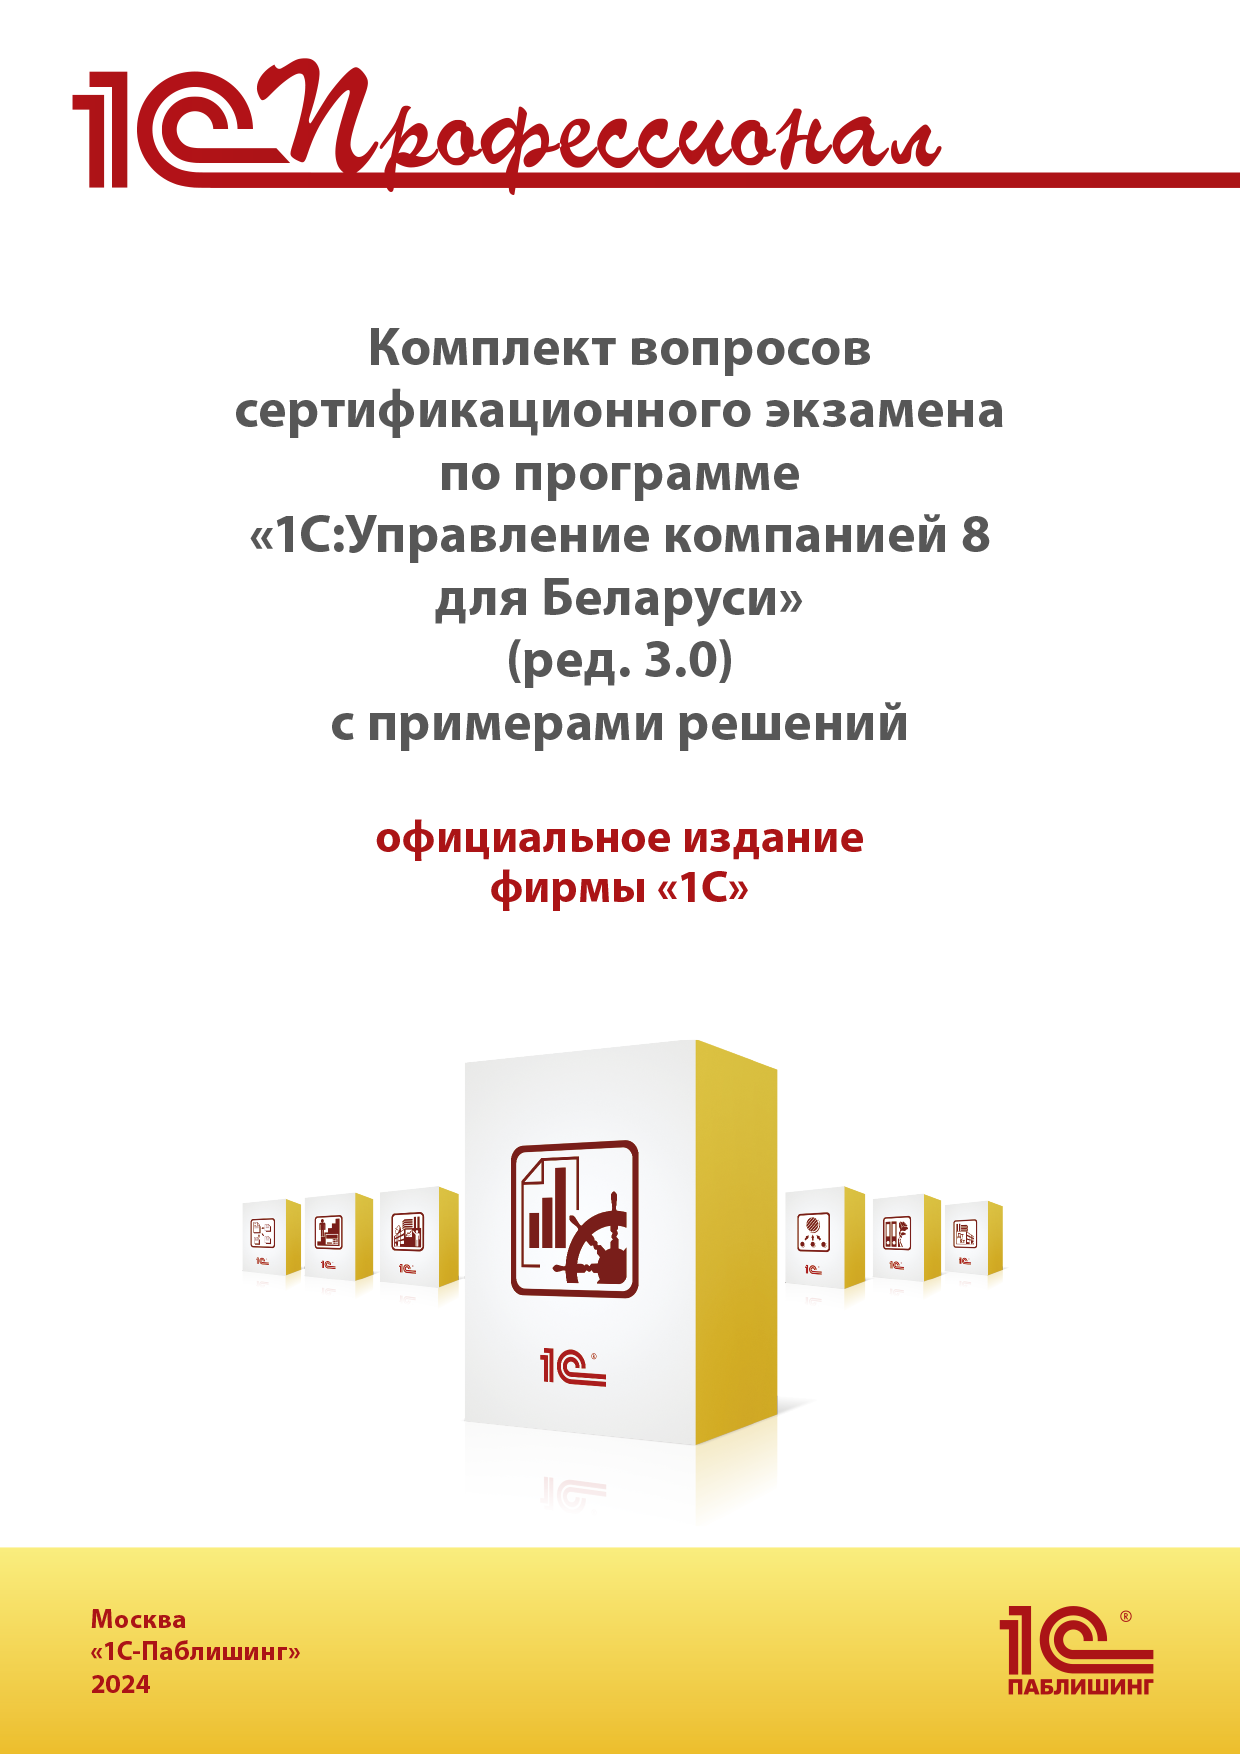 Комплект вопросов сертификационного экзамена «1С:Профессионал» по программе «1С:Управление компанией 8 для Беларуси» (ред. 3.0), июнь 2024